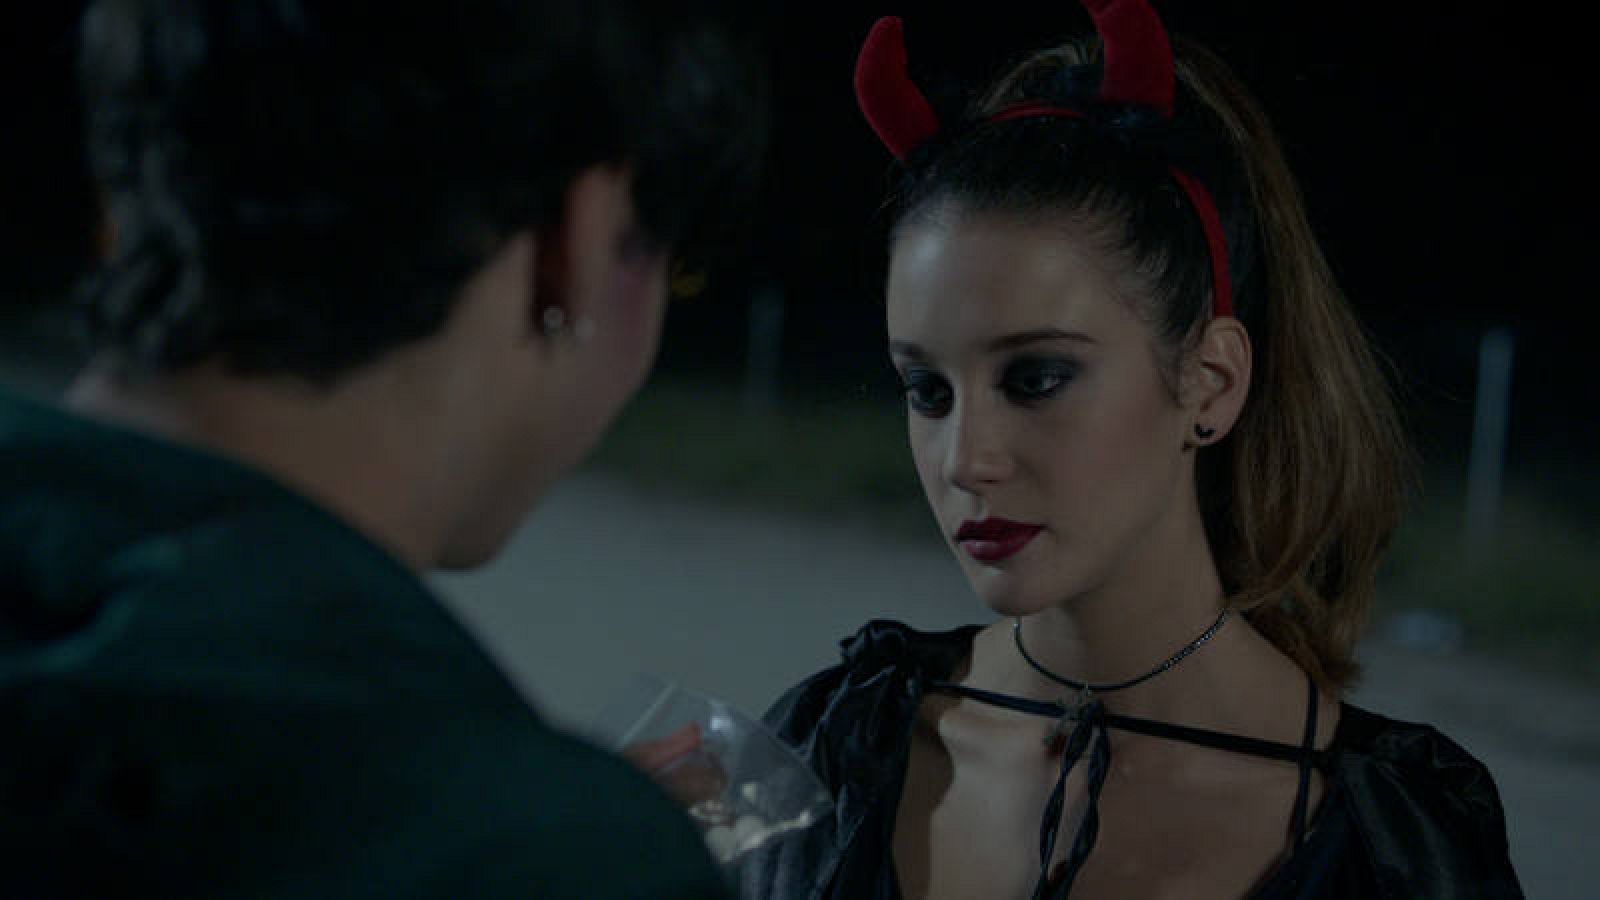 Rafa (Óscar Casas) le ofrece a Alba (María Pedraza) unas pastillas antes de entrar en la fiesta de Halloween